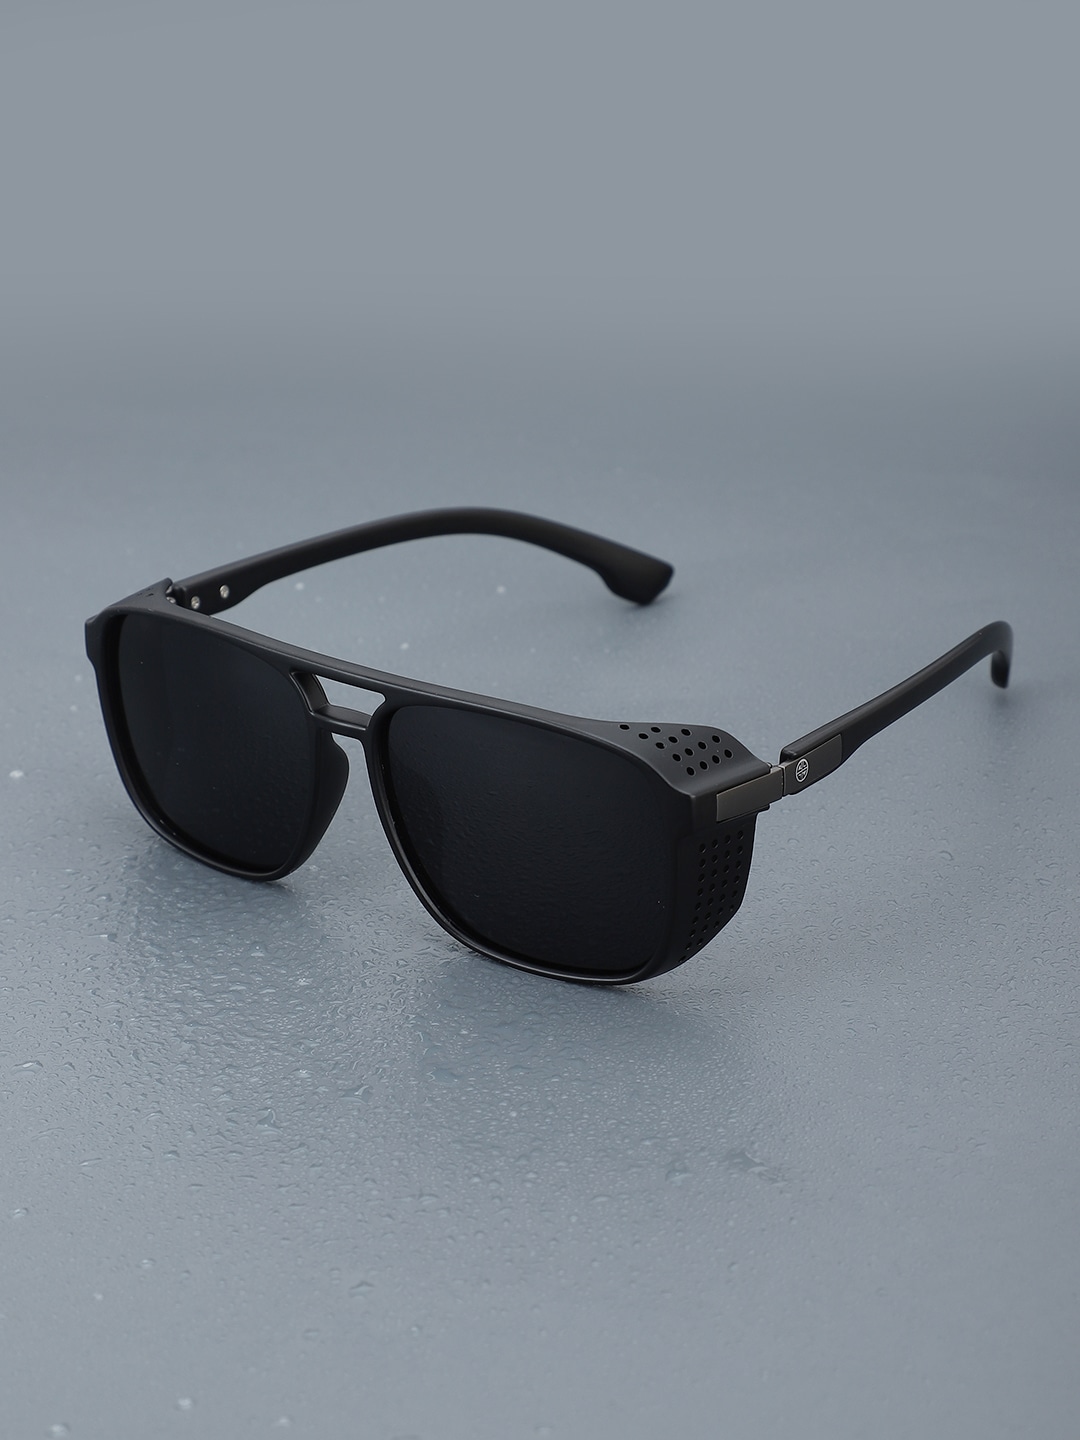 Carlton London Premium Men Polarised & UV Protected Lens Square Sunglasses - CLSM168